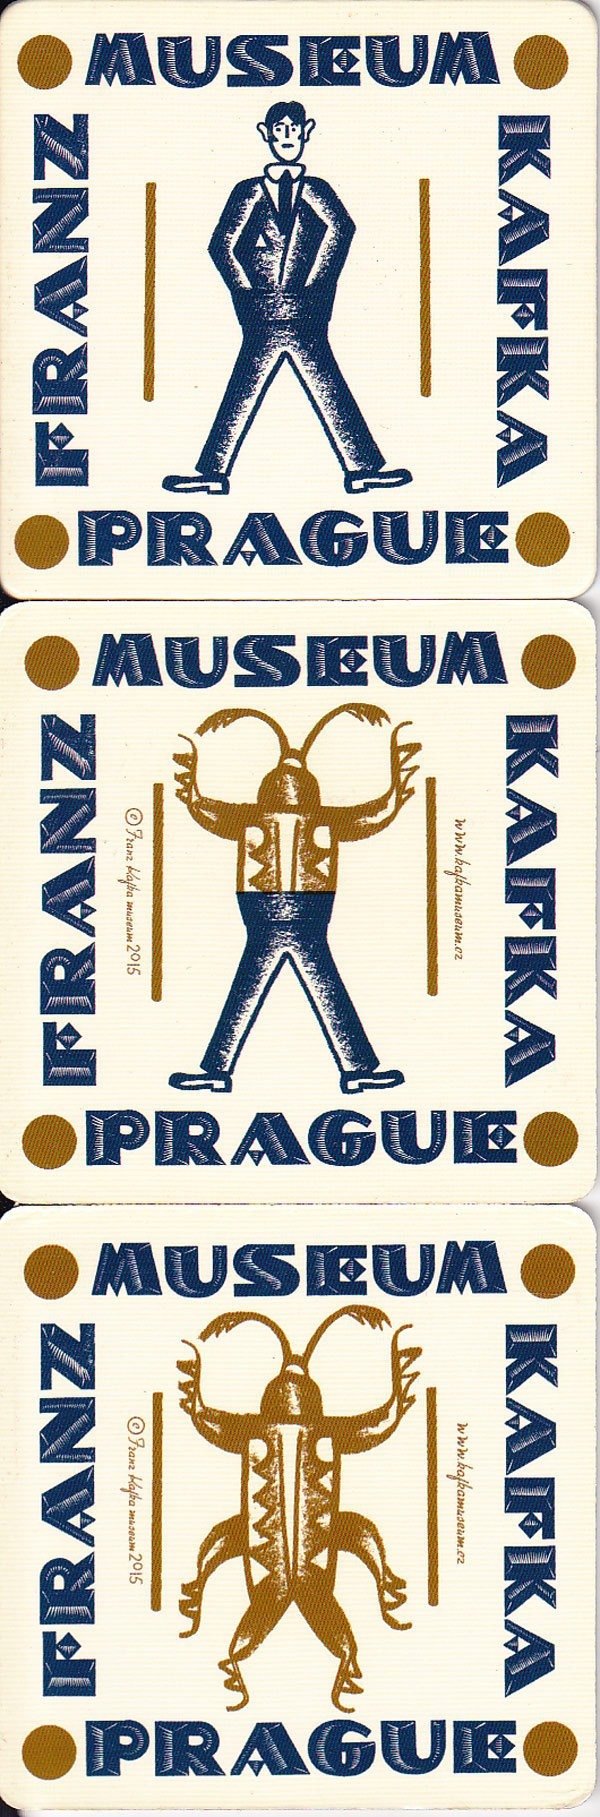 Franz Kafka Museum Prague by 